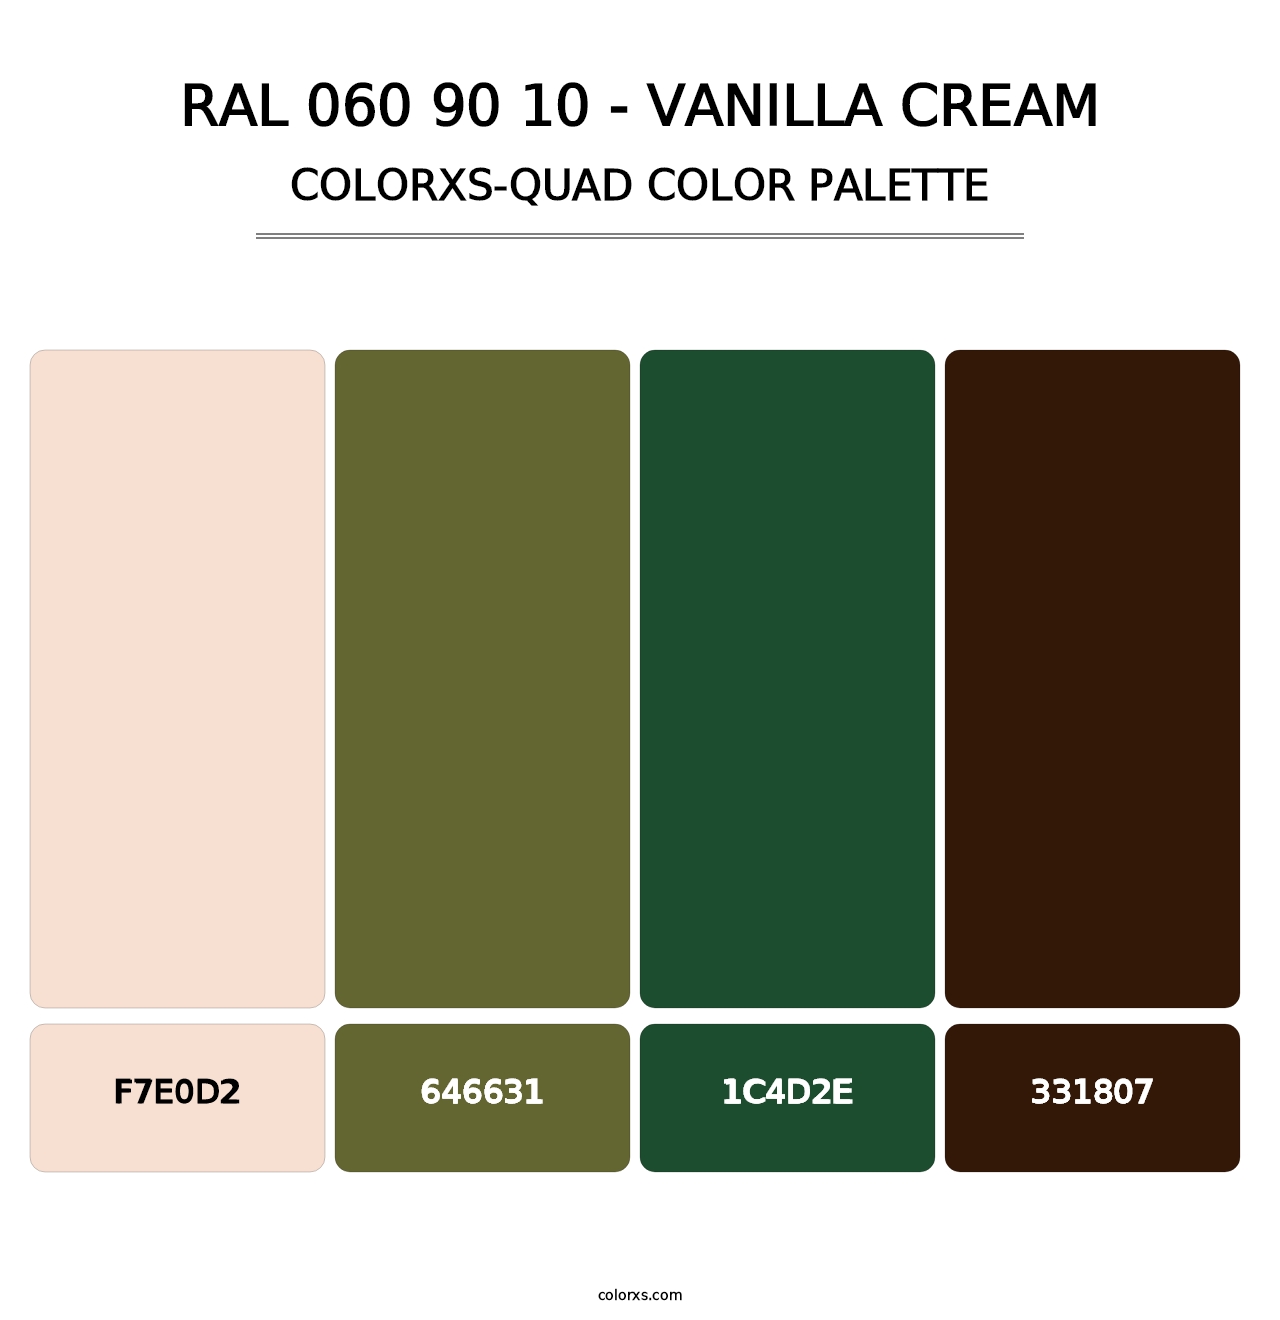 RAL 060 90 10 - Vanilla Cream - Colorxs Quad Palette